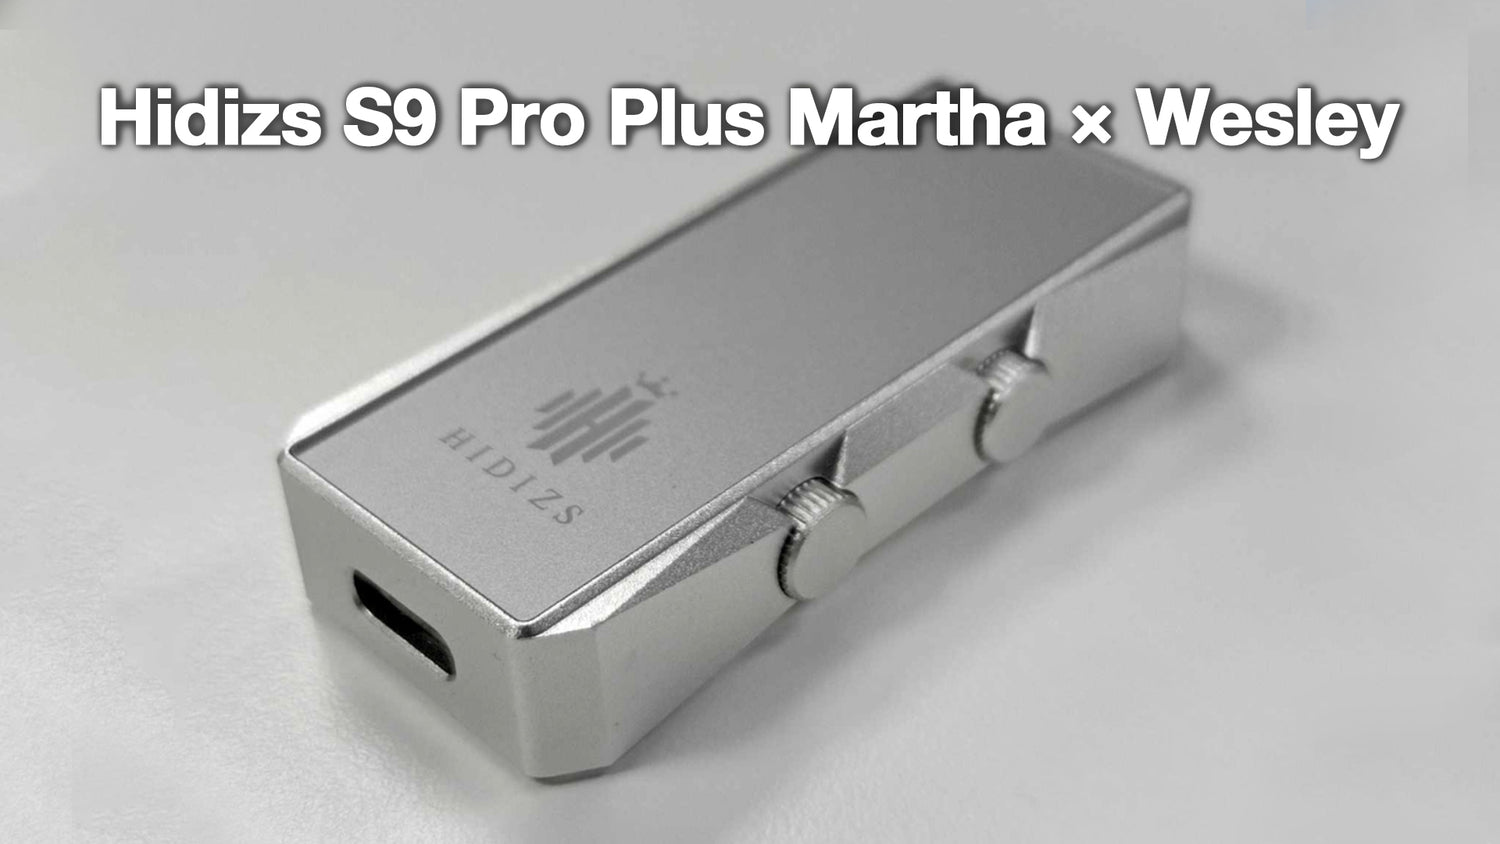 Hidizs S9 Pro Plus Martha Review - Wesley